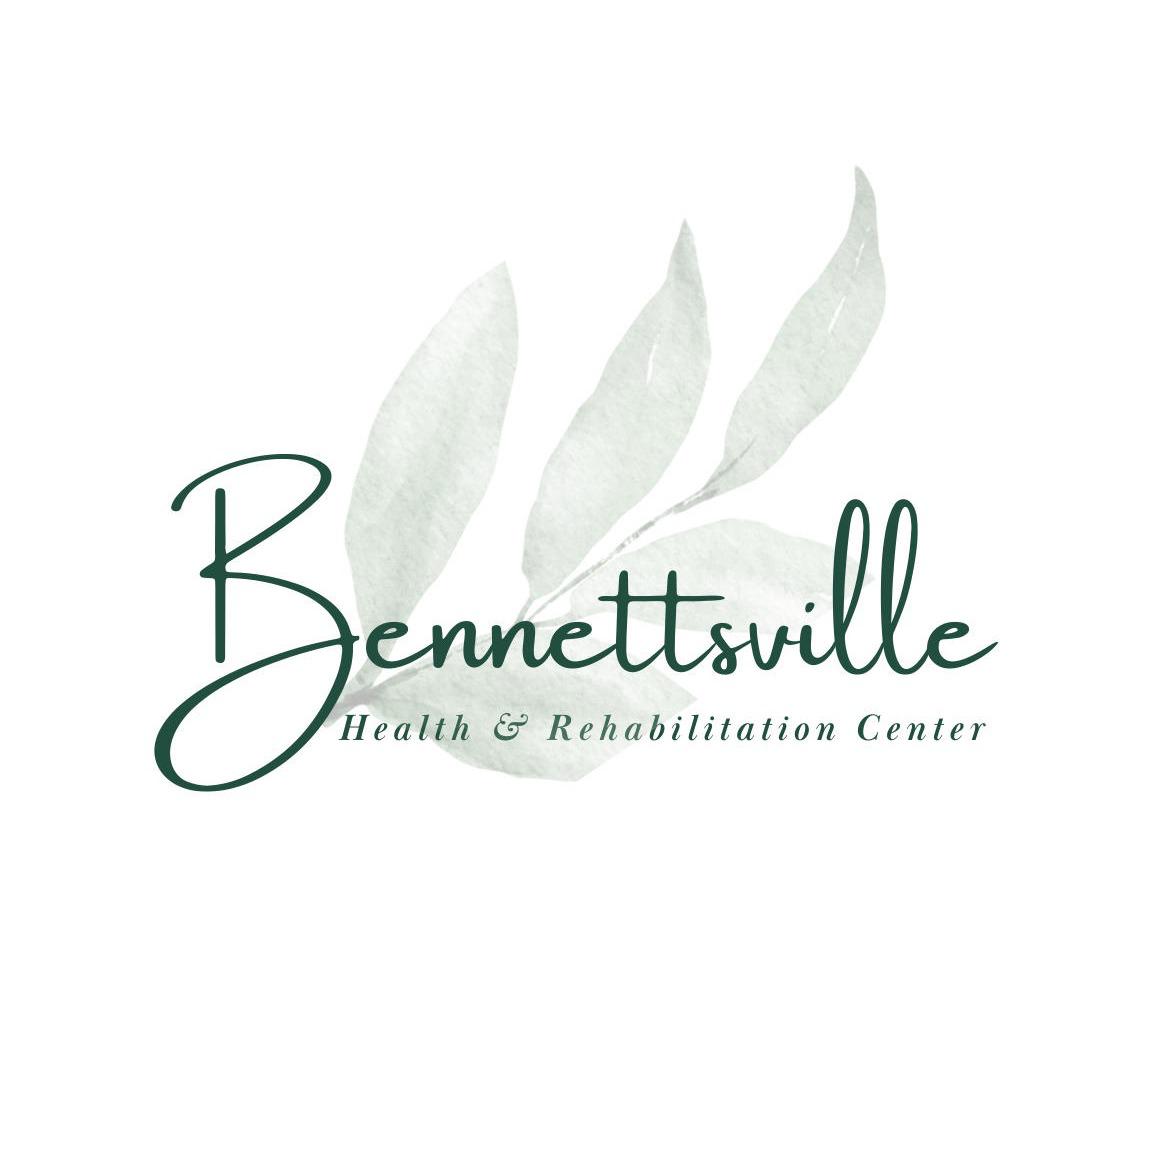 Bennettsville Health & Rehabilitation Center